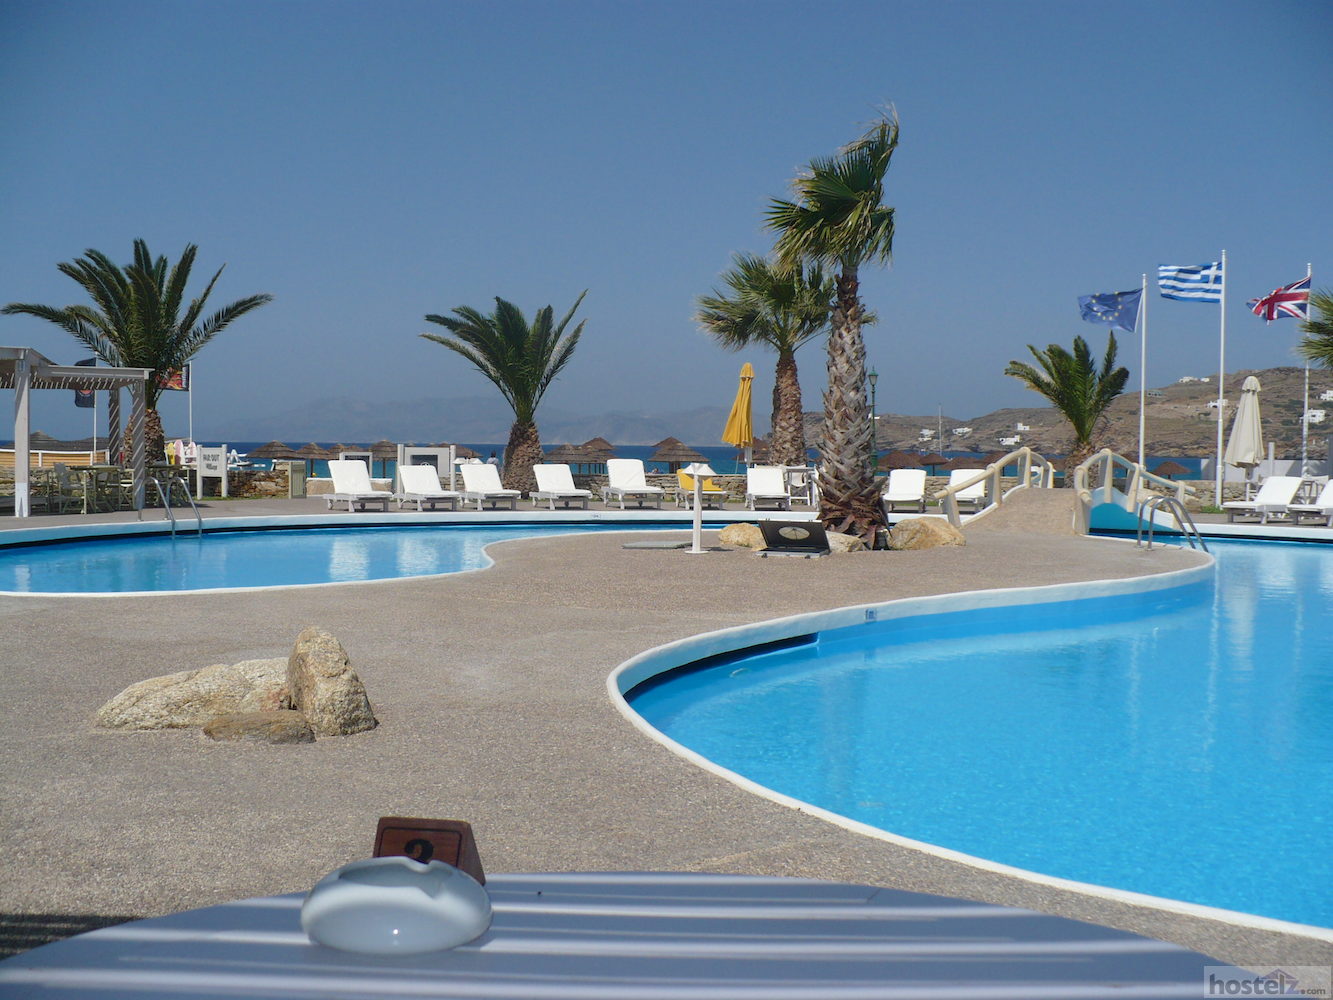 Far Out Beach Club - Ios, Greece Reviews - Hostelz.com